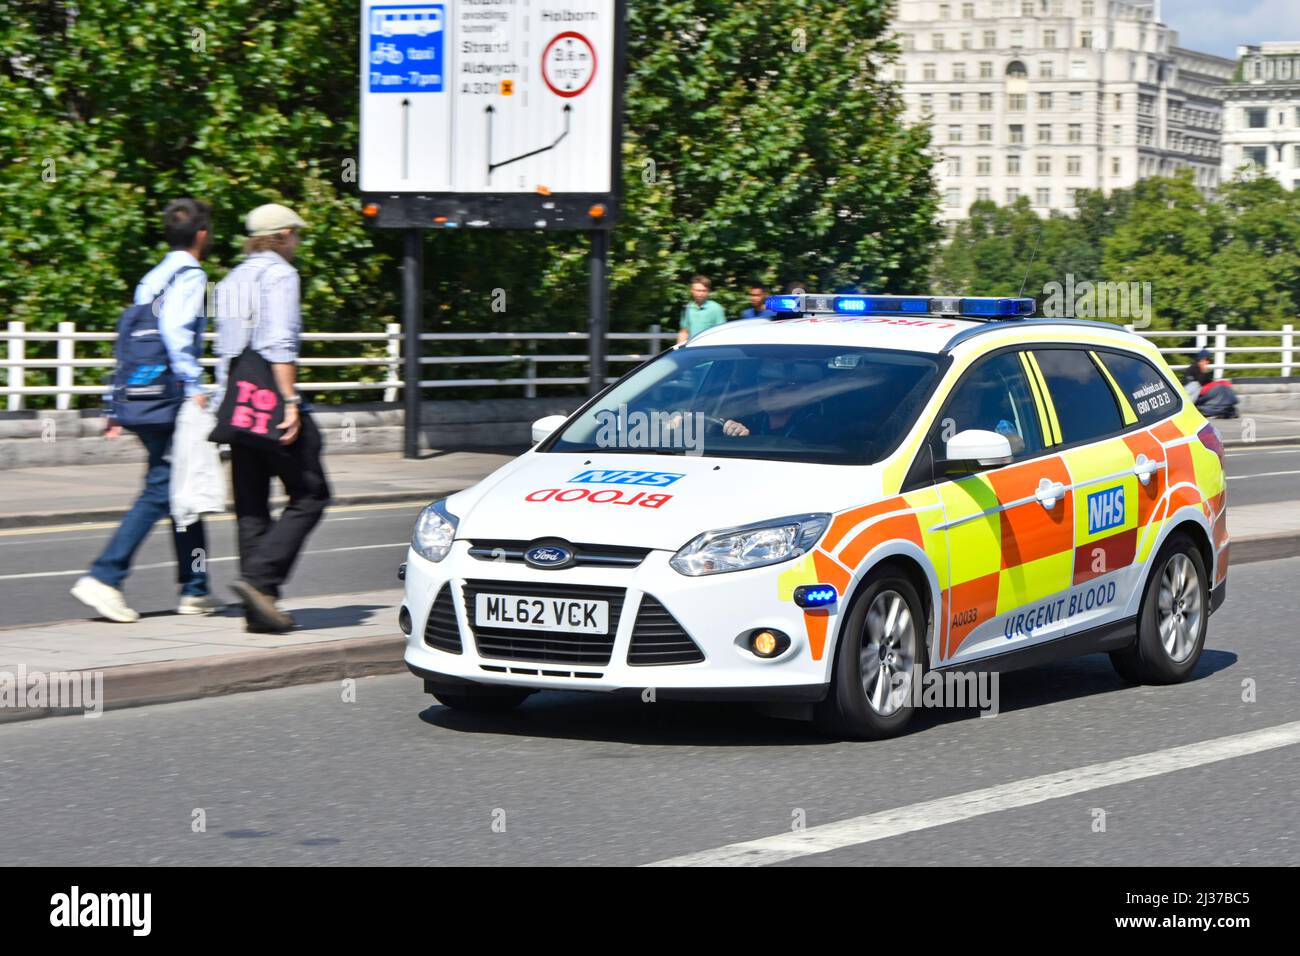 Livraison urgente de sang NHS en voiture blanche Ford avec des marques réfléchissantes Battenberg sur les feux bleus à grande vitesse sur Waterloo Bridge Londres Angleterre Royaume-Uni Banque D'Images